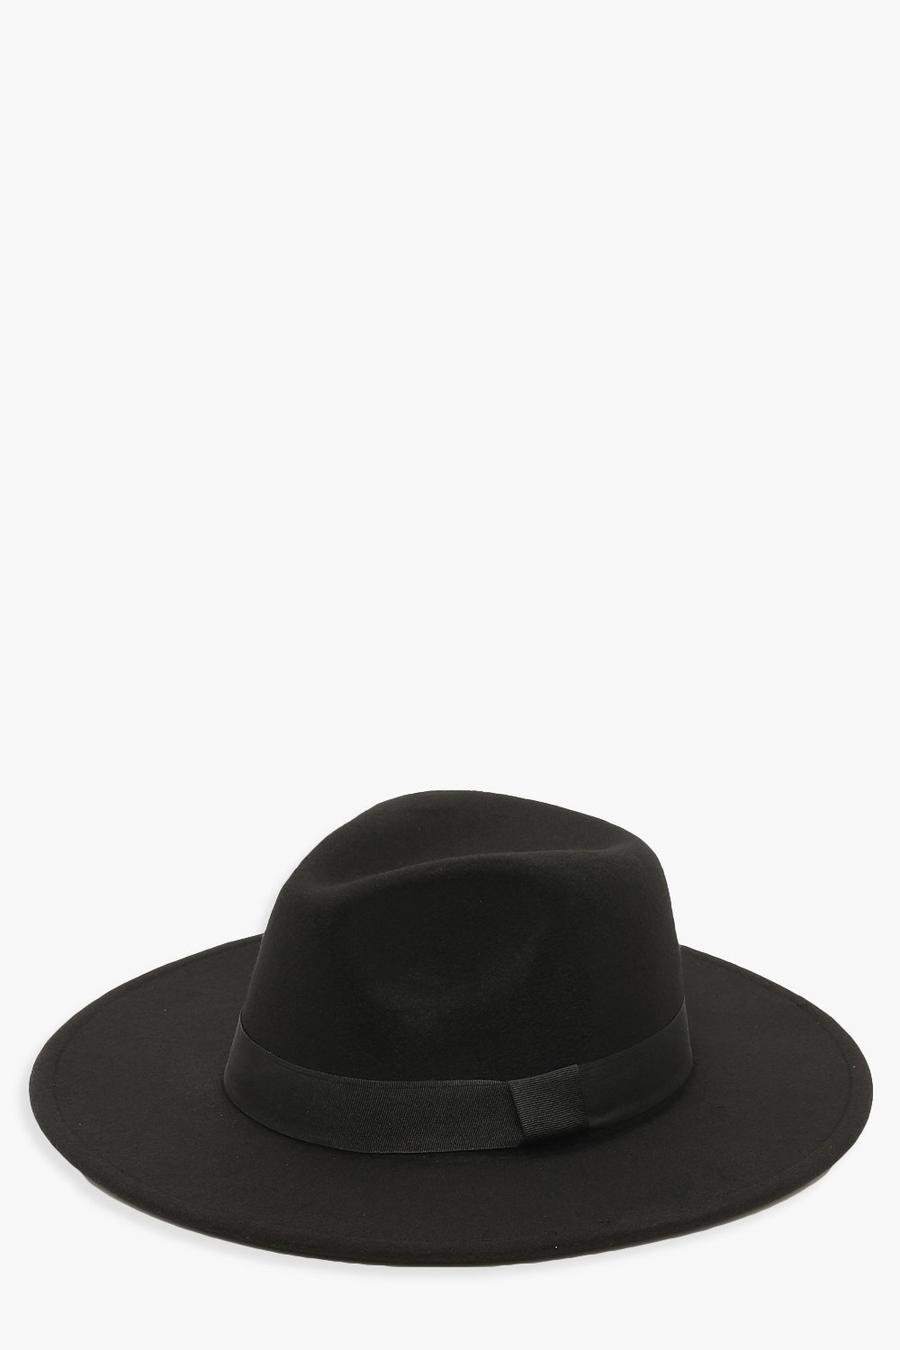 שחור black כובע פדורה עם עיטור סרט